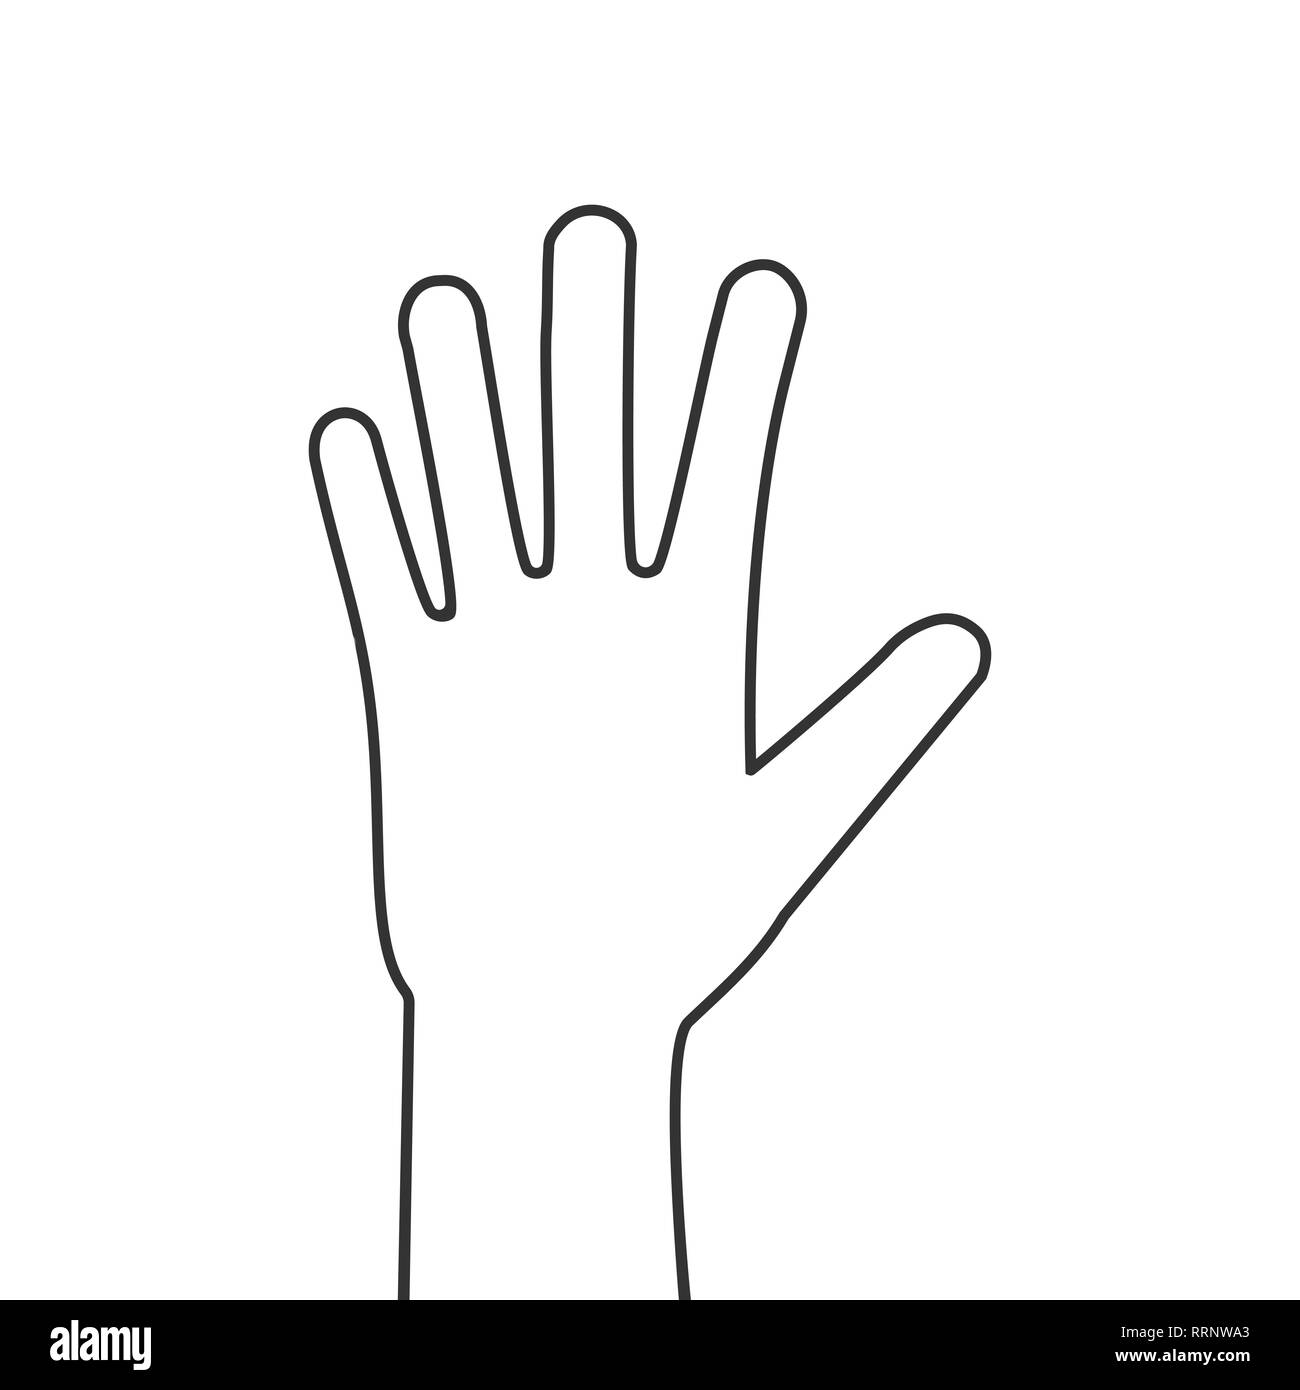 Menschliche Hand Palm - auf weißem Hintergrund Vector Illustration für Web Seite oder mobile Anwendung öffnen. VectorVector Illustration, flache Bauform. Stock Vektor